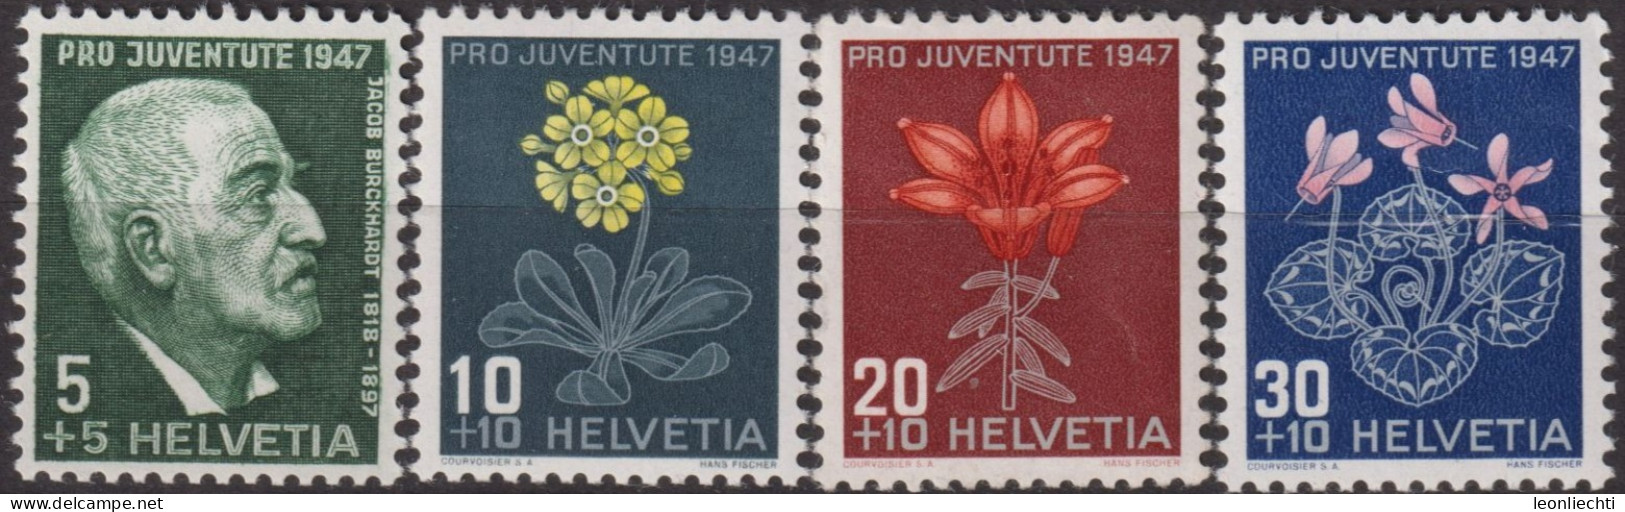 1947 Schweiz Pro Juventute ** Mi:CH 488-491, Yt:CH 445-448, Zum:CH J121-J124, J. Burckhardt Und Alpenblumen - Neufs